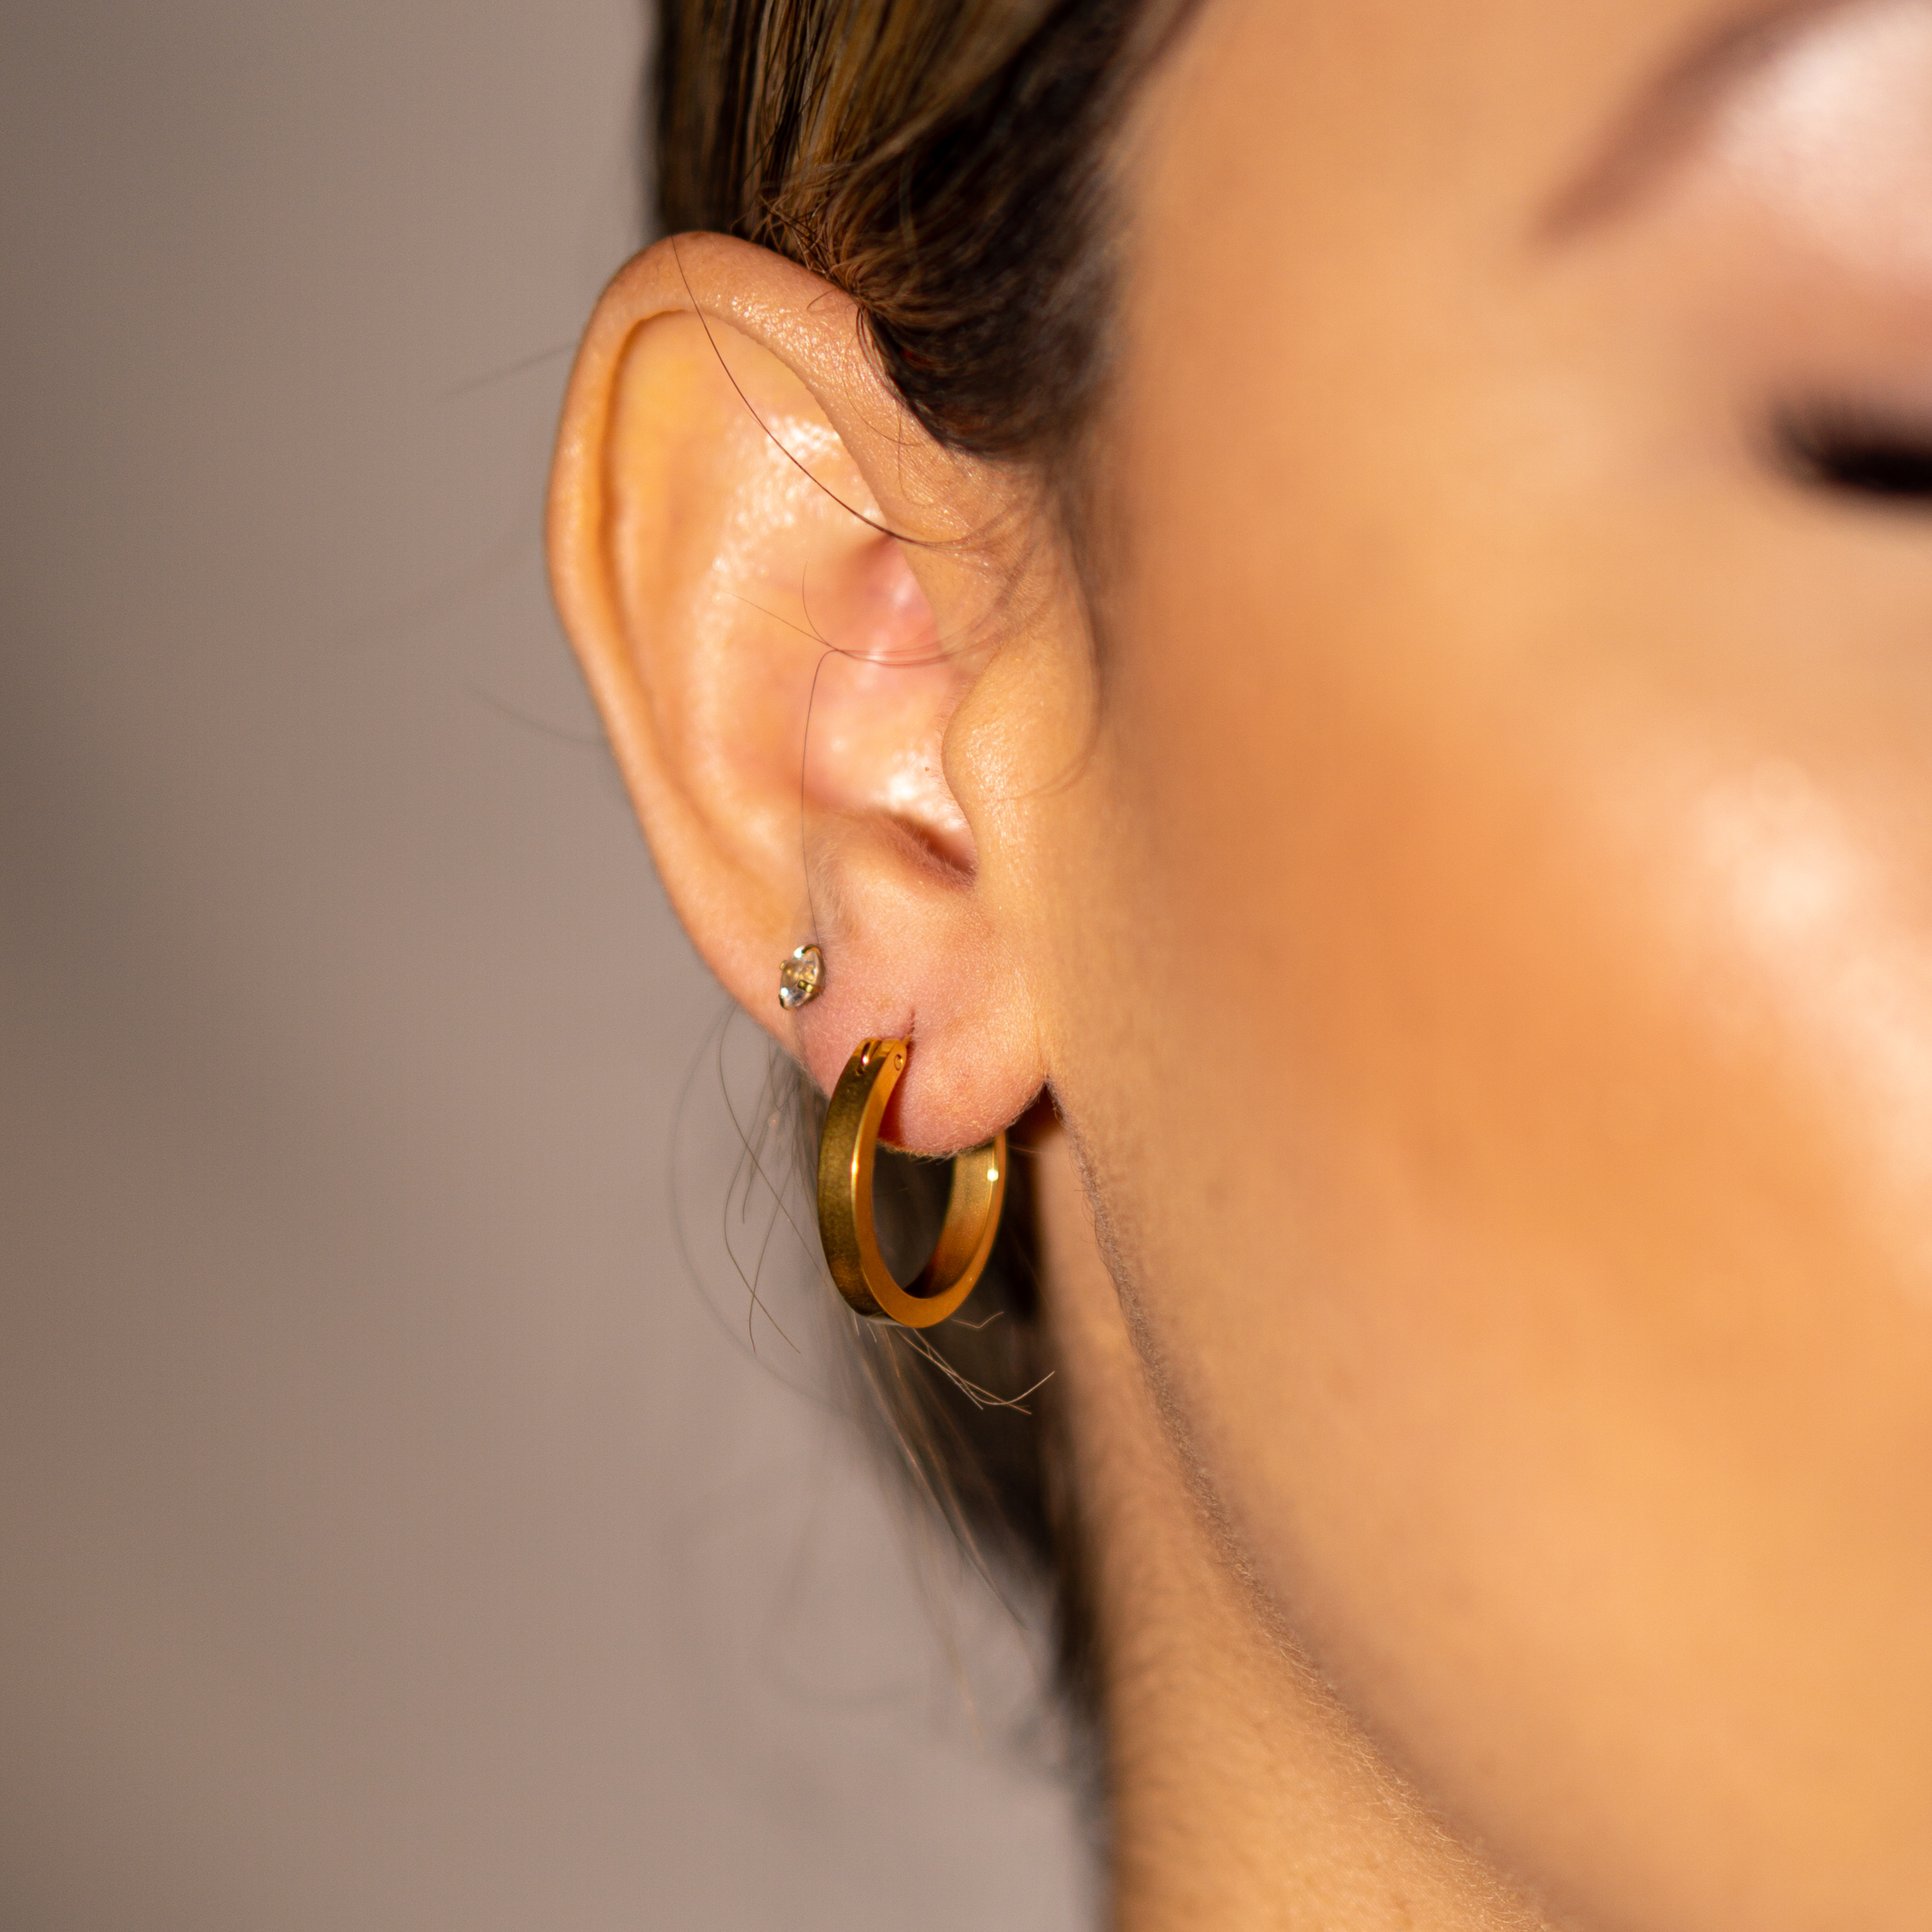 Minimalist Mixed Small Earrings Set Simple Geometric Stud Earrings for  Women Girls Tiny Ear Studs Pendientes Kleine Oorbellen - AliExpress